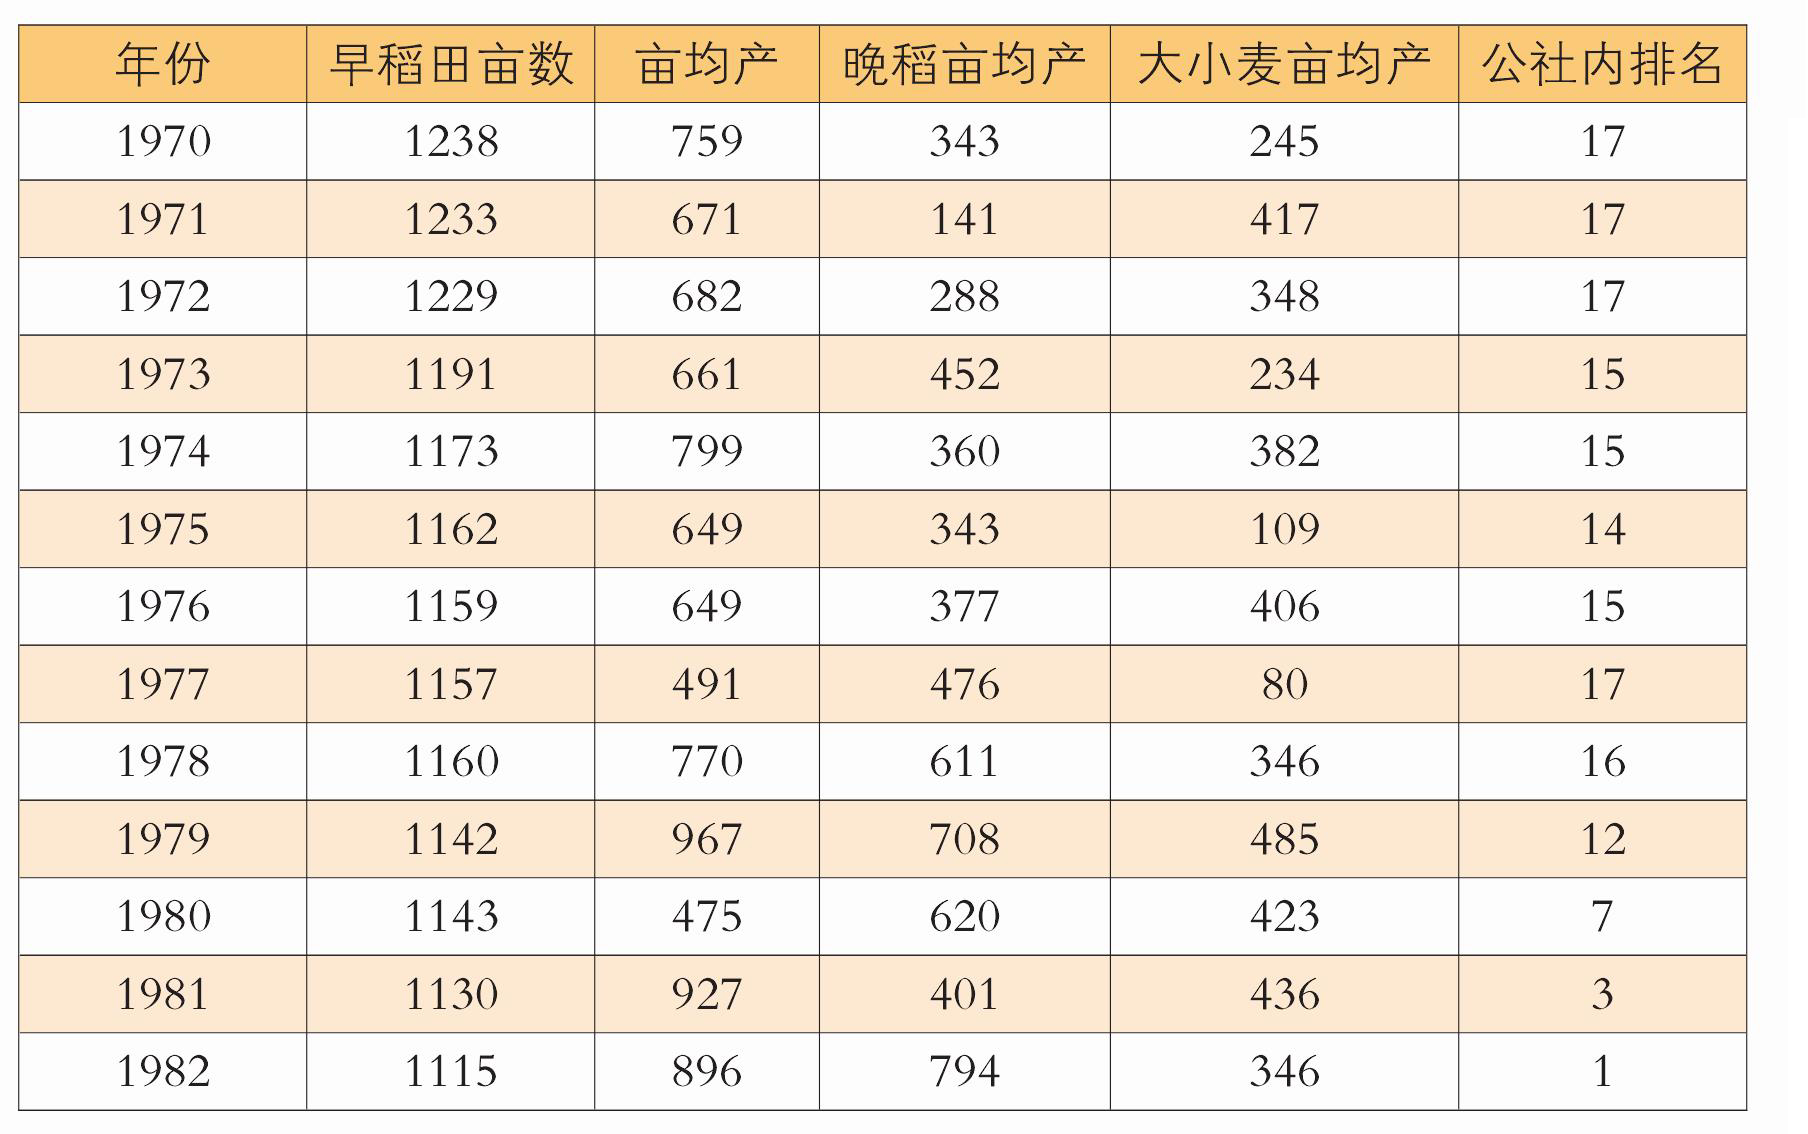 附表:湾底粮食产量统计表(1970—1982)(单位:斤)